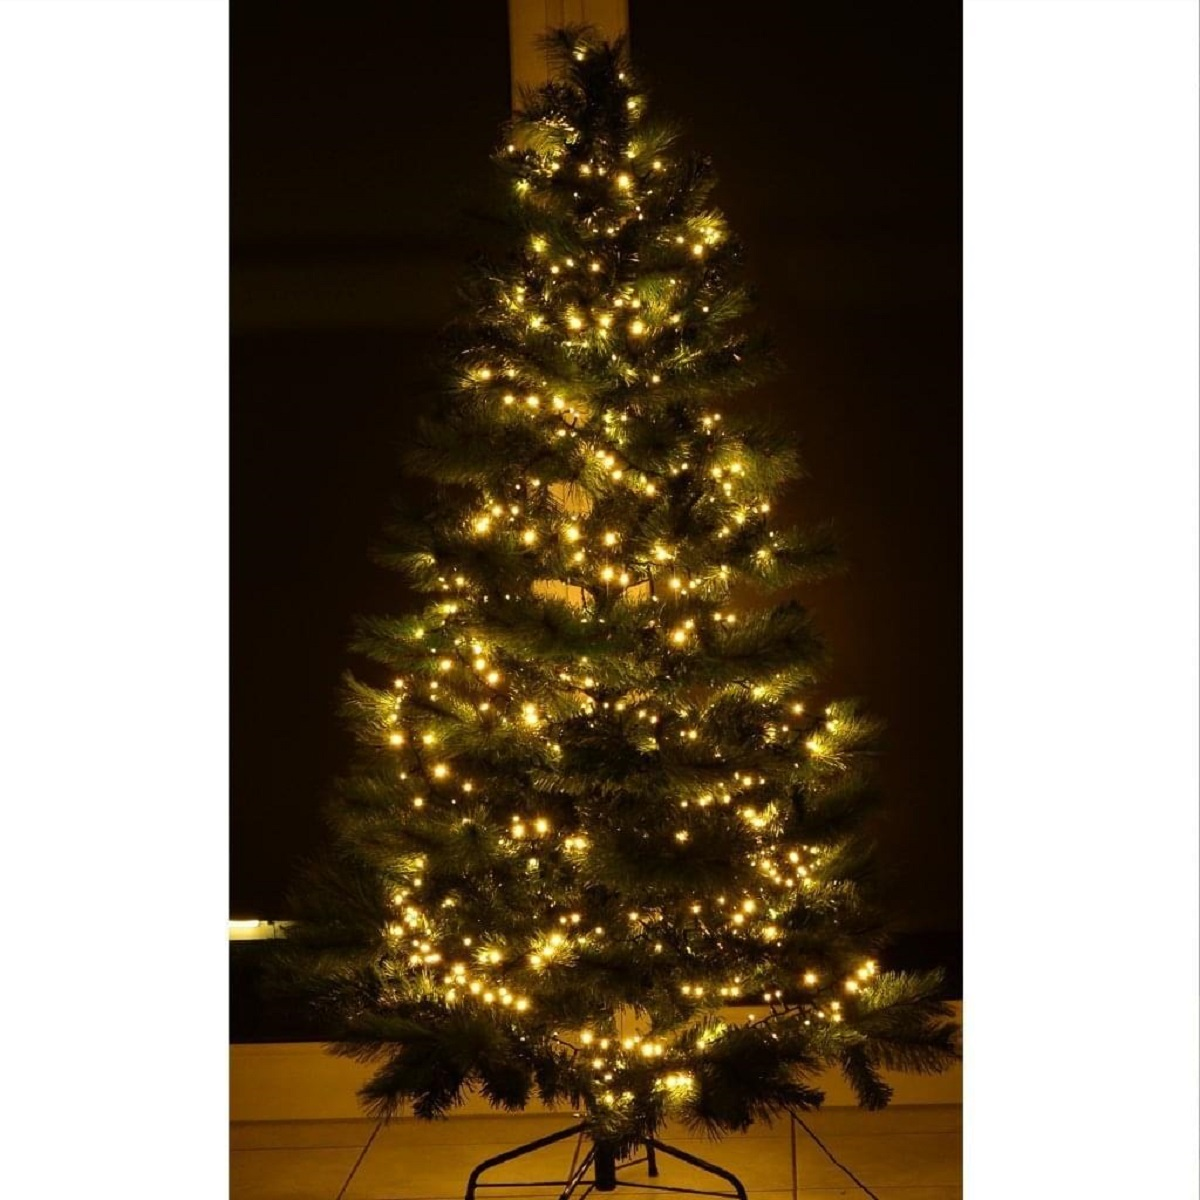 SLABO Weihnachtsbeleuchtung 1500er LED Weihnachten Weihnachtsbaum Deko Lichter Dekoration Lichterkette